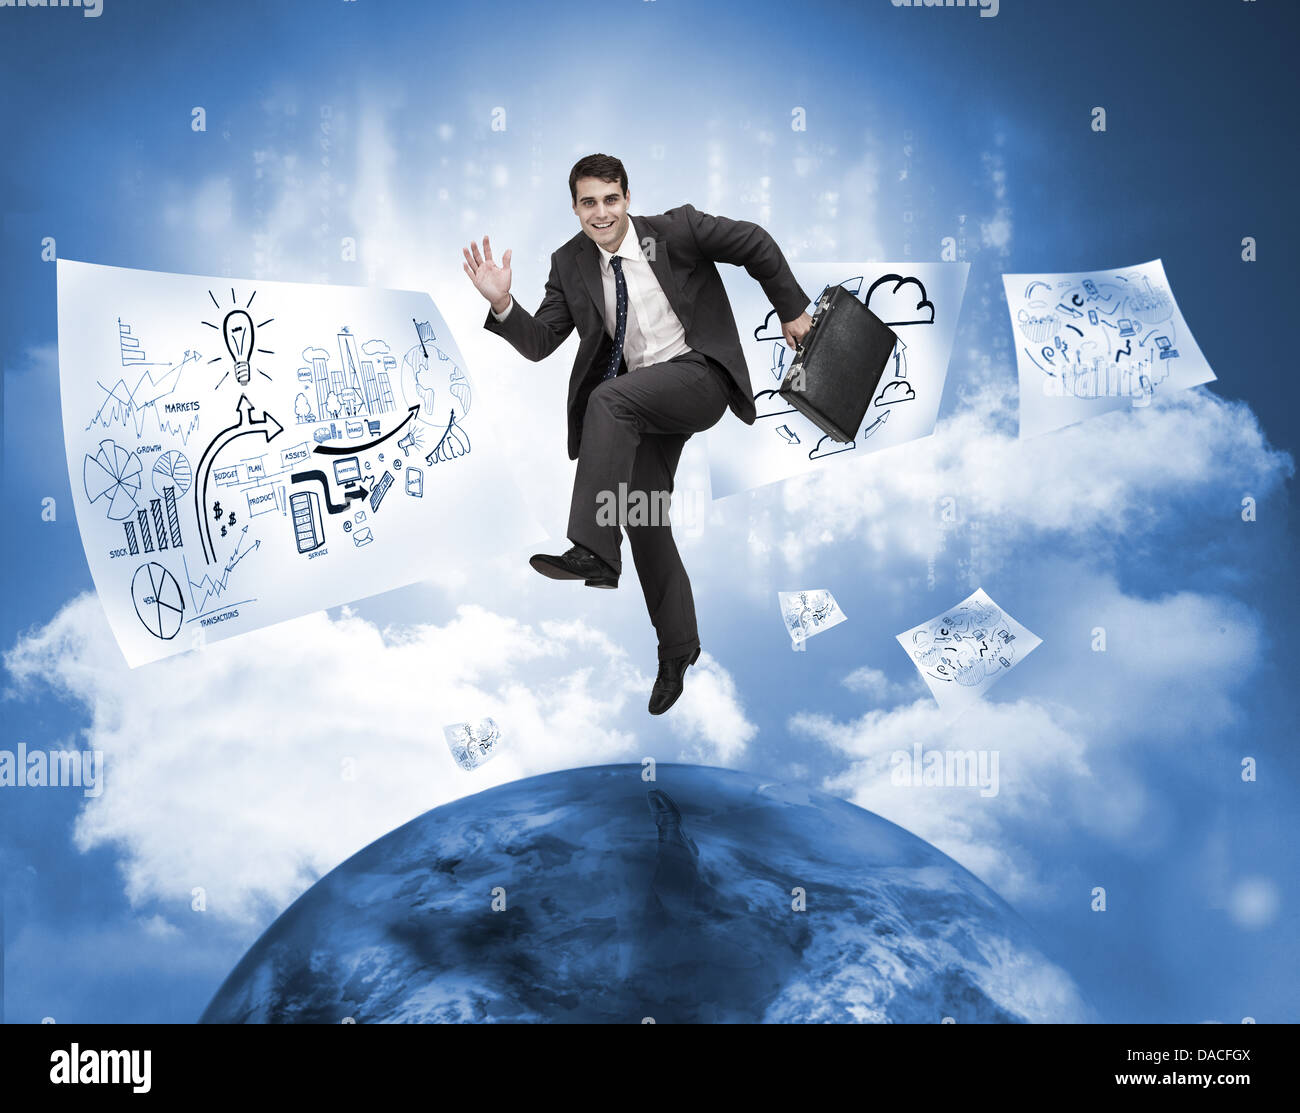 Businessman jumping sur une planète avec dessins floating Banque D'Images